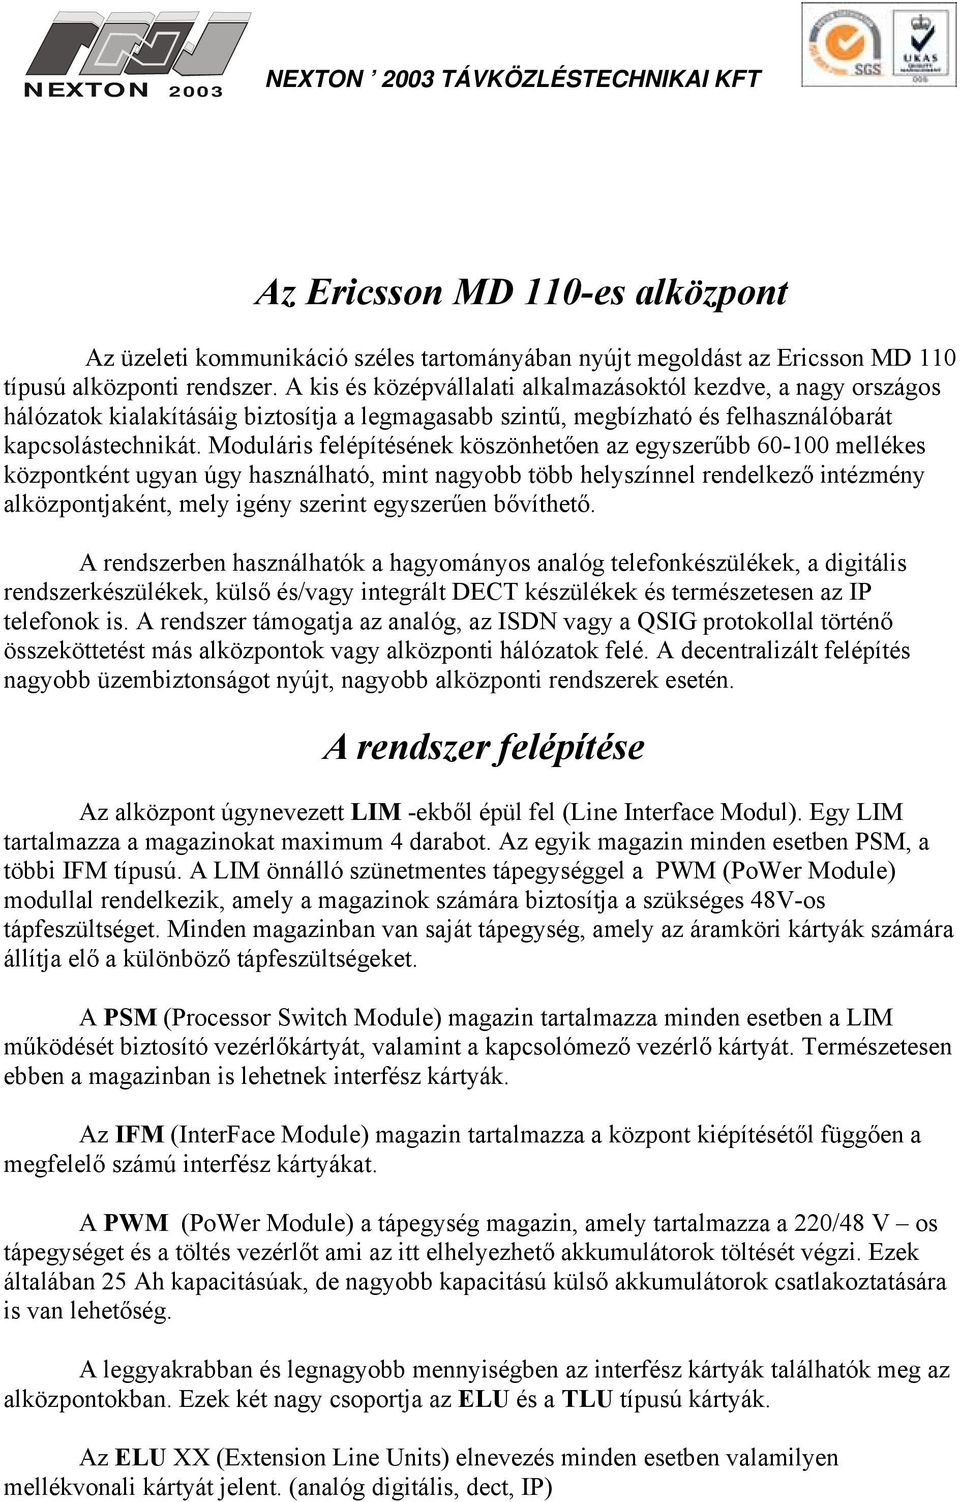 Az Ericsson MD 110-es alközpont. A rendszer felépítése - PDF Ingyenes  letöltés